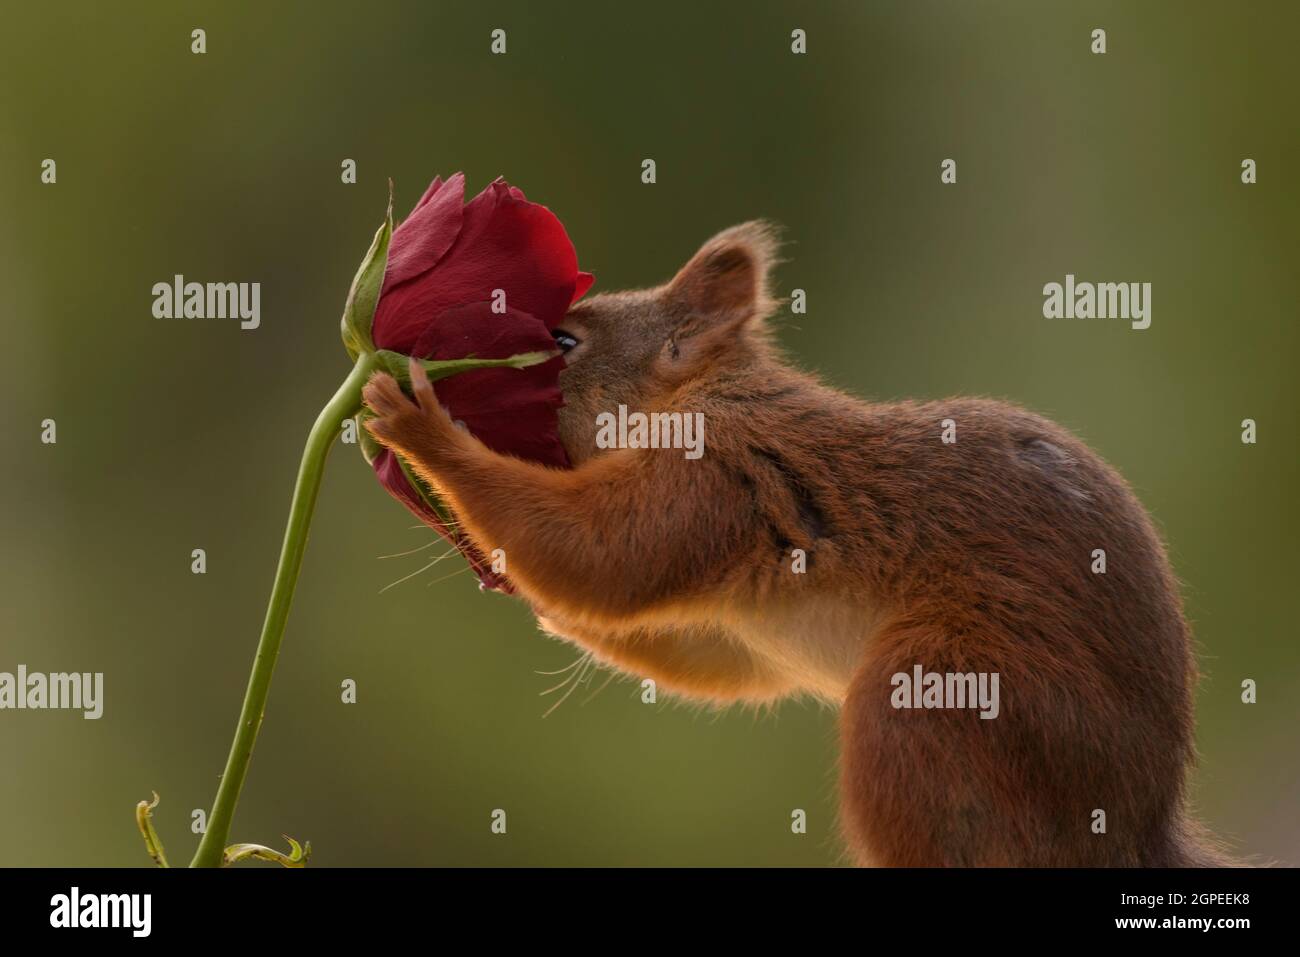 Eichhörnchen mit seiner Nase in eine rote Rose Stockfoto